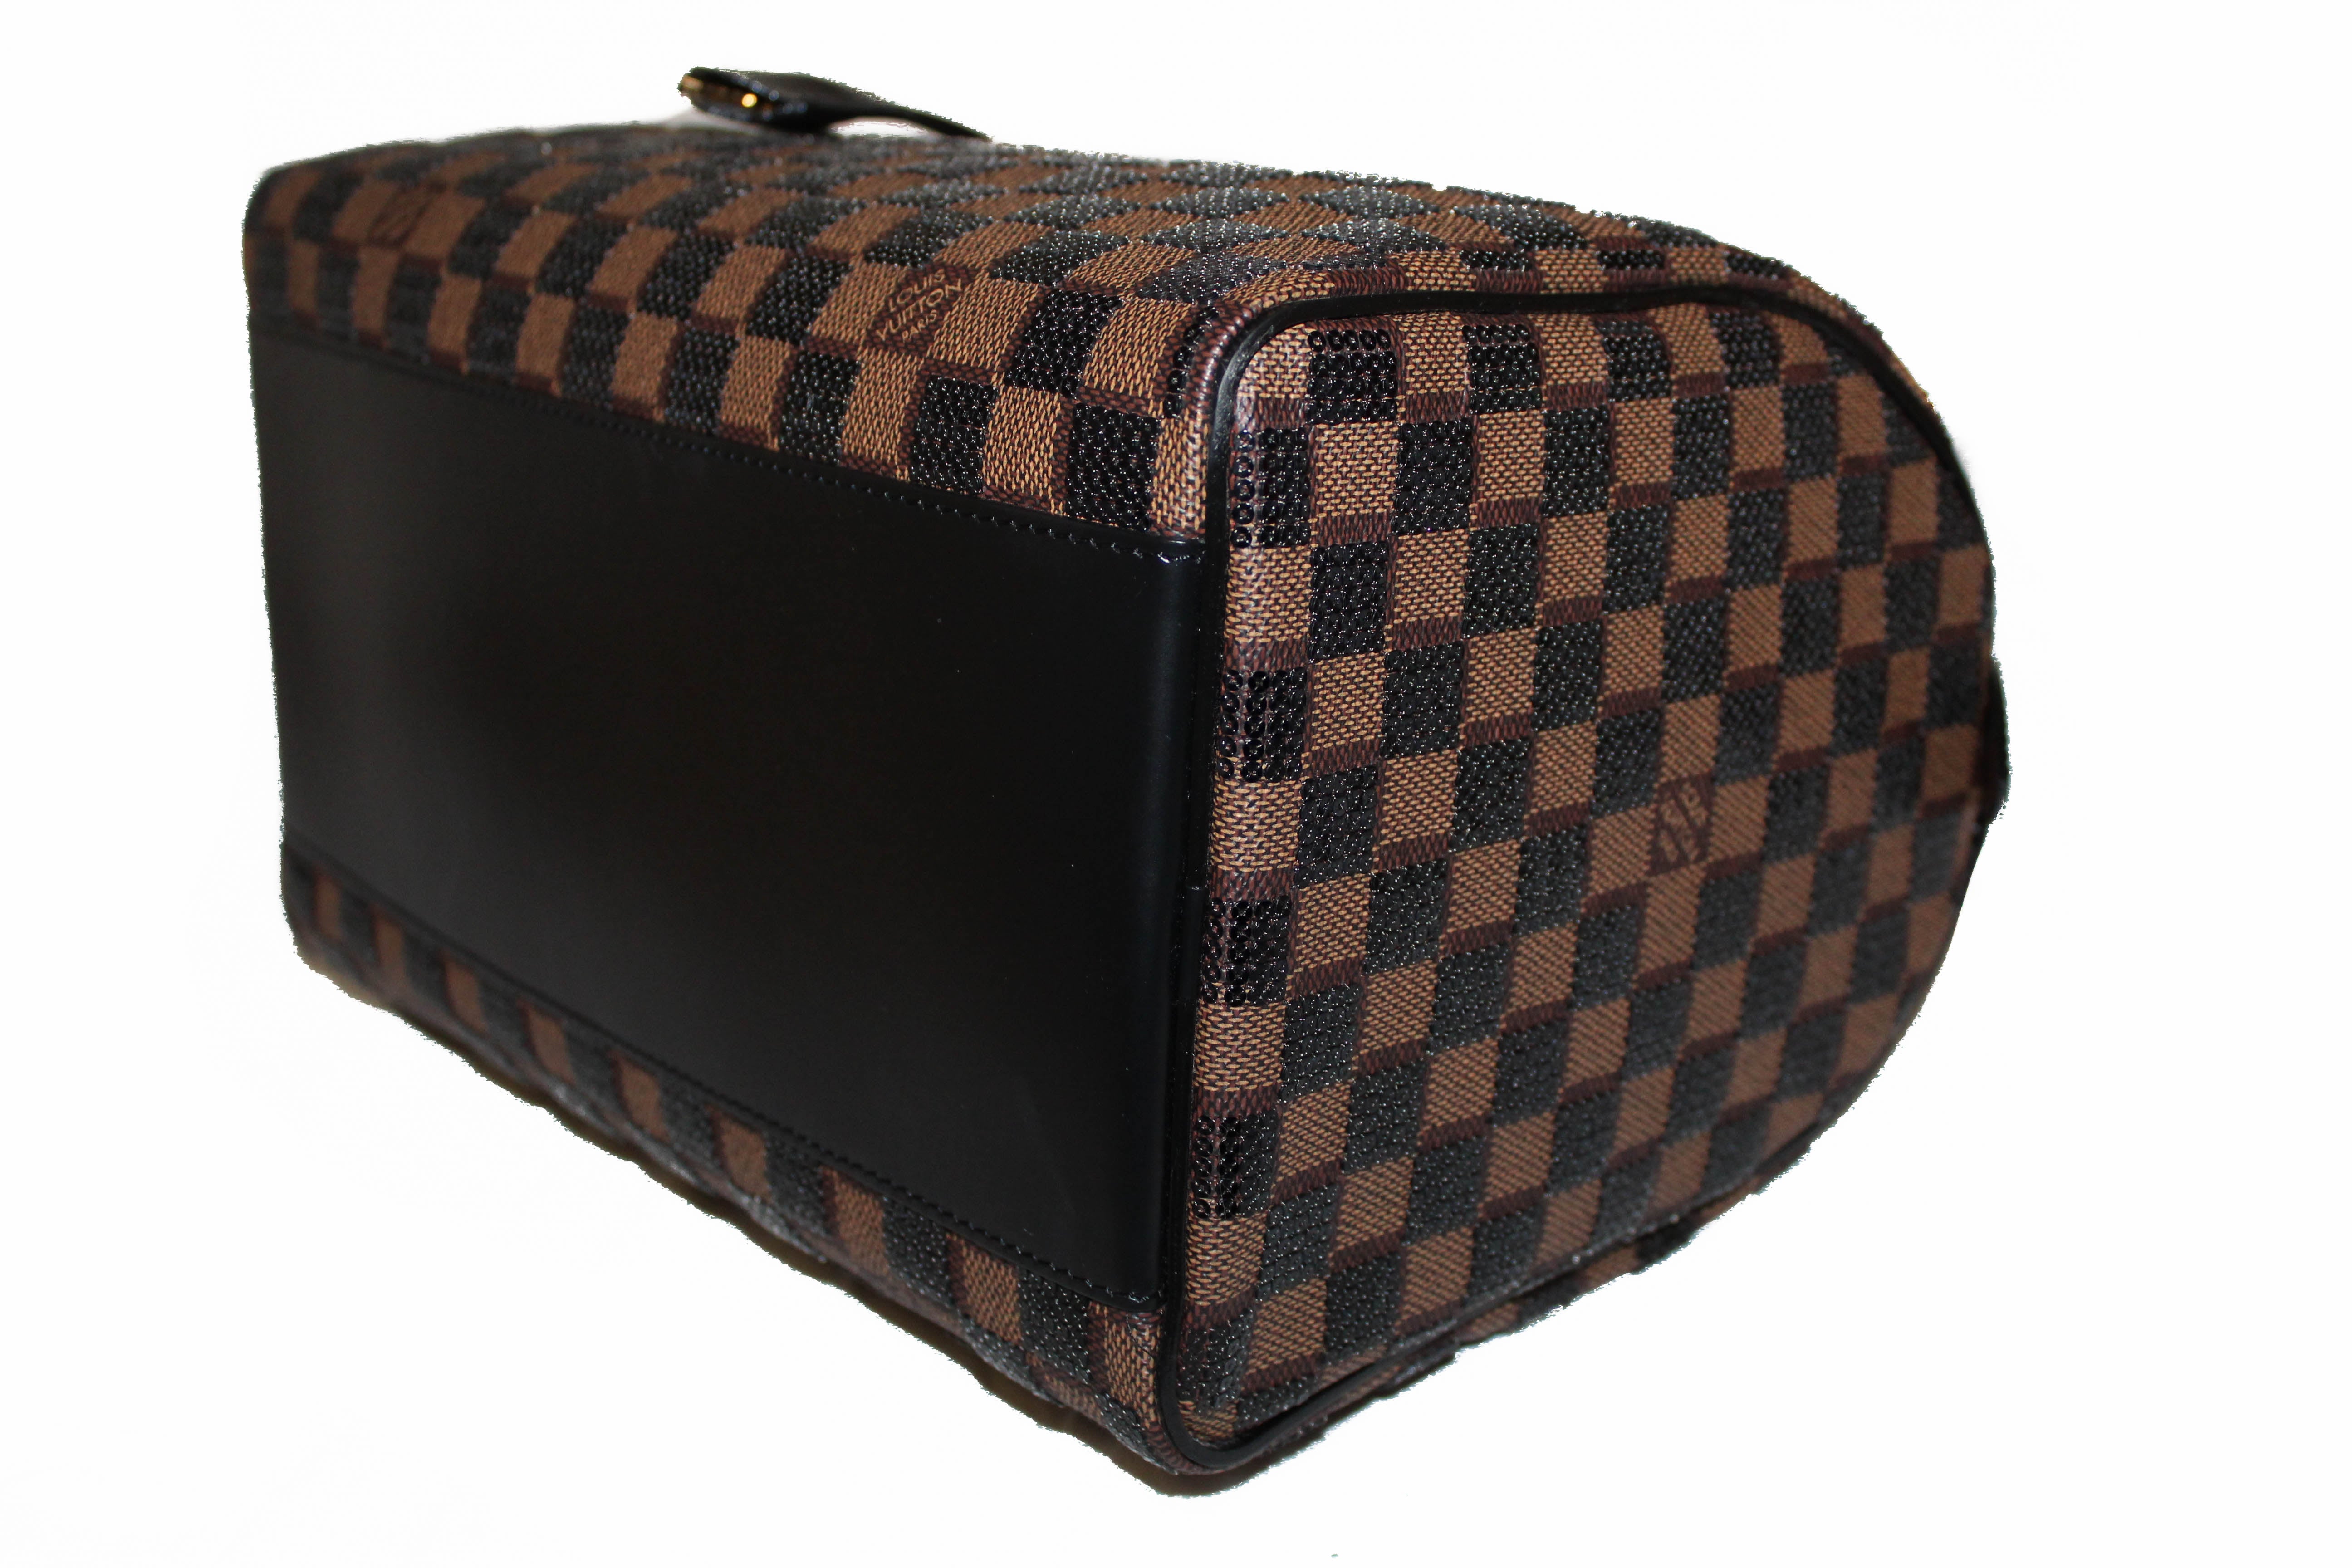 Louis Vuitton Black Damier Paillettes Speedy 30 Limited Edition Bag